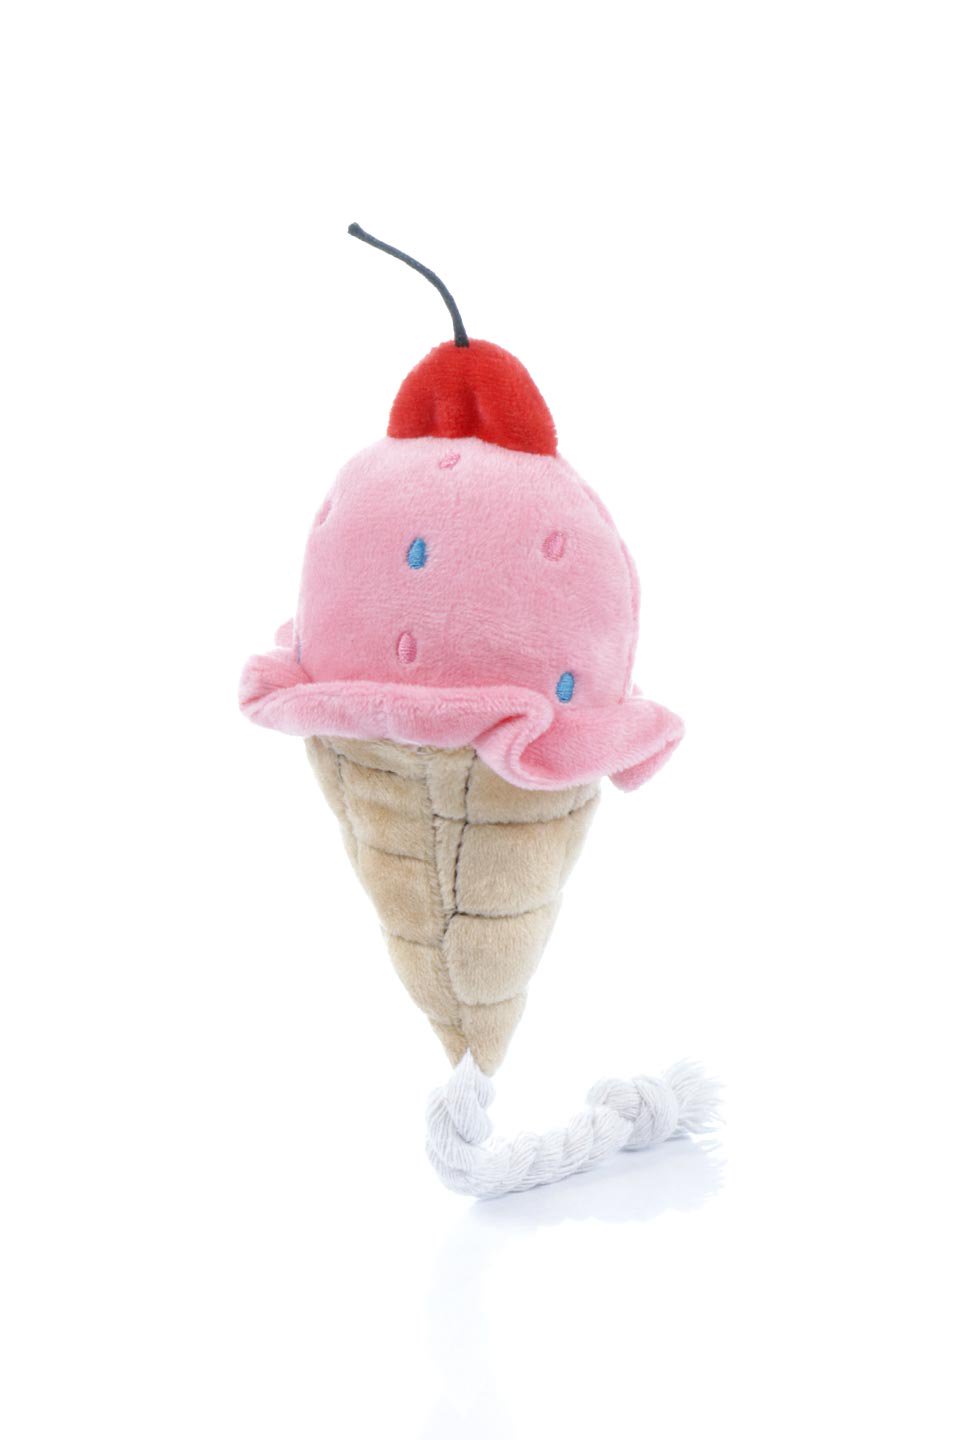 アイスクリーム・犬用オモチャ｜ドッググッズを海外から直輸入/福島市 